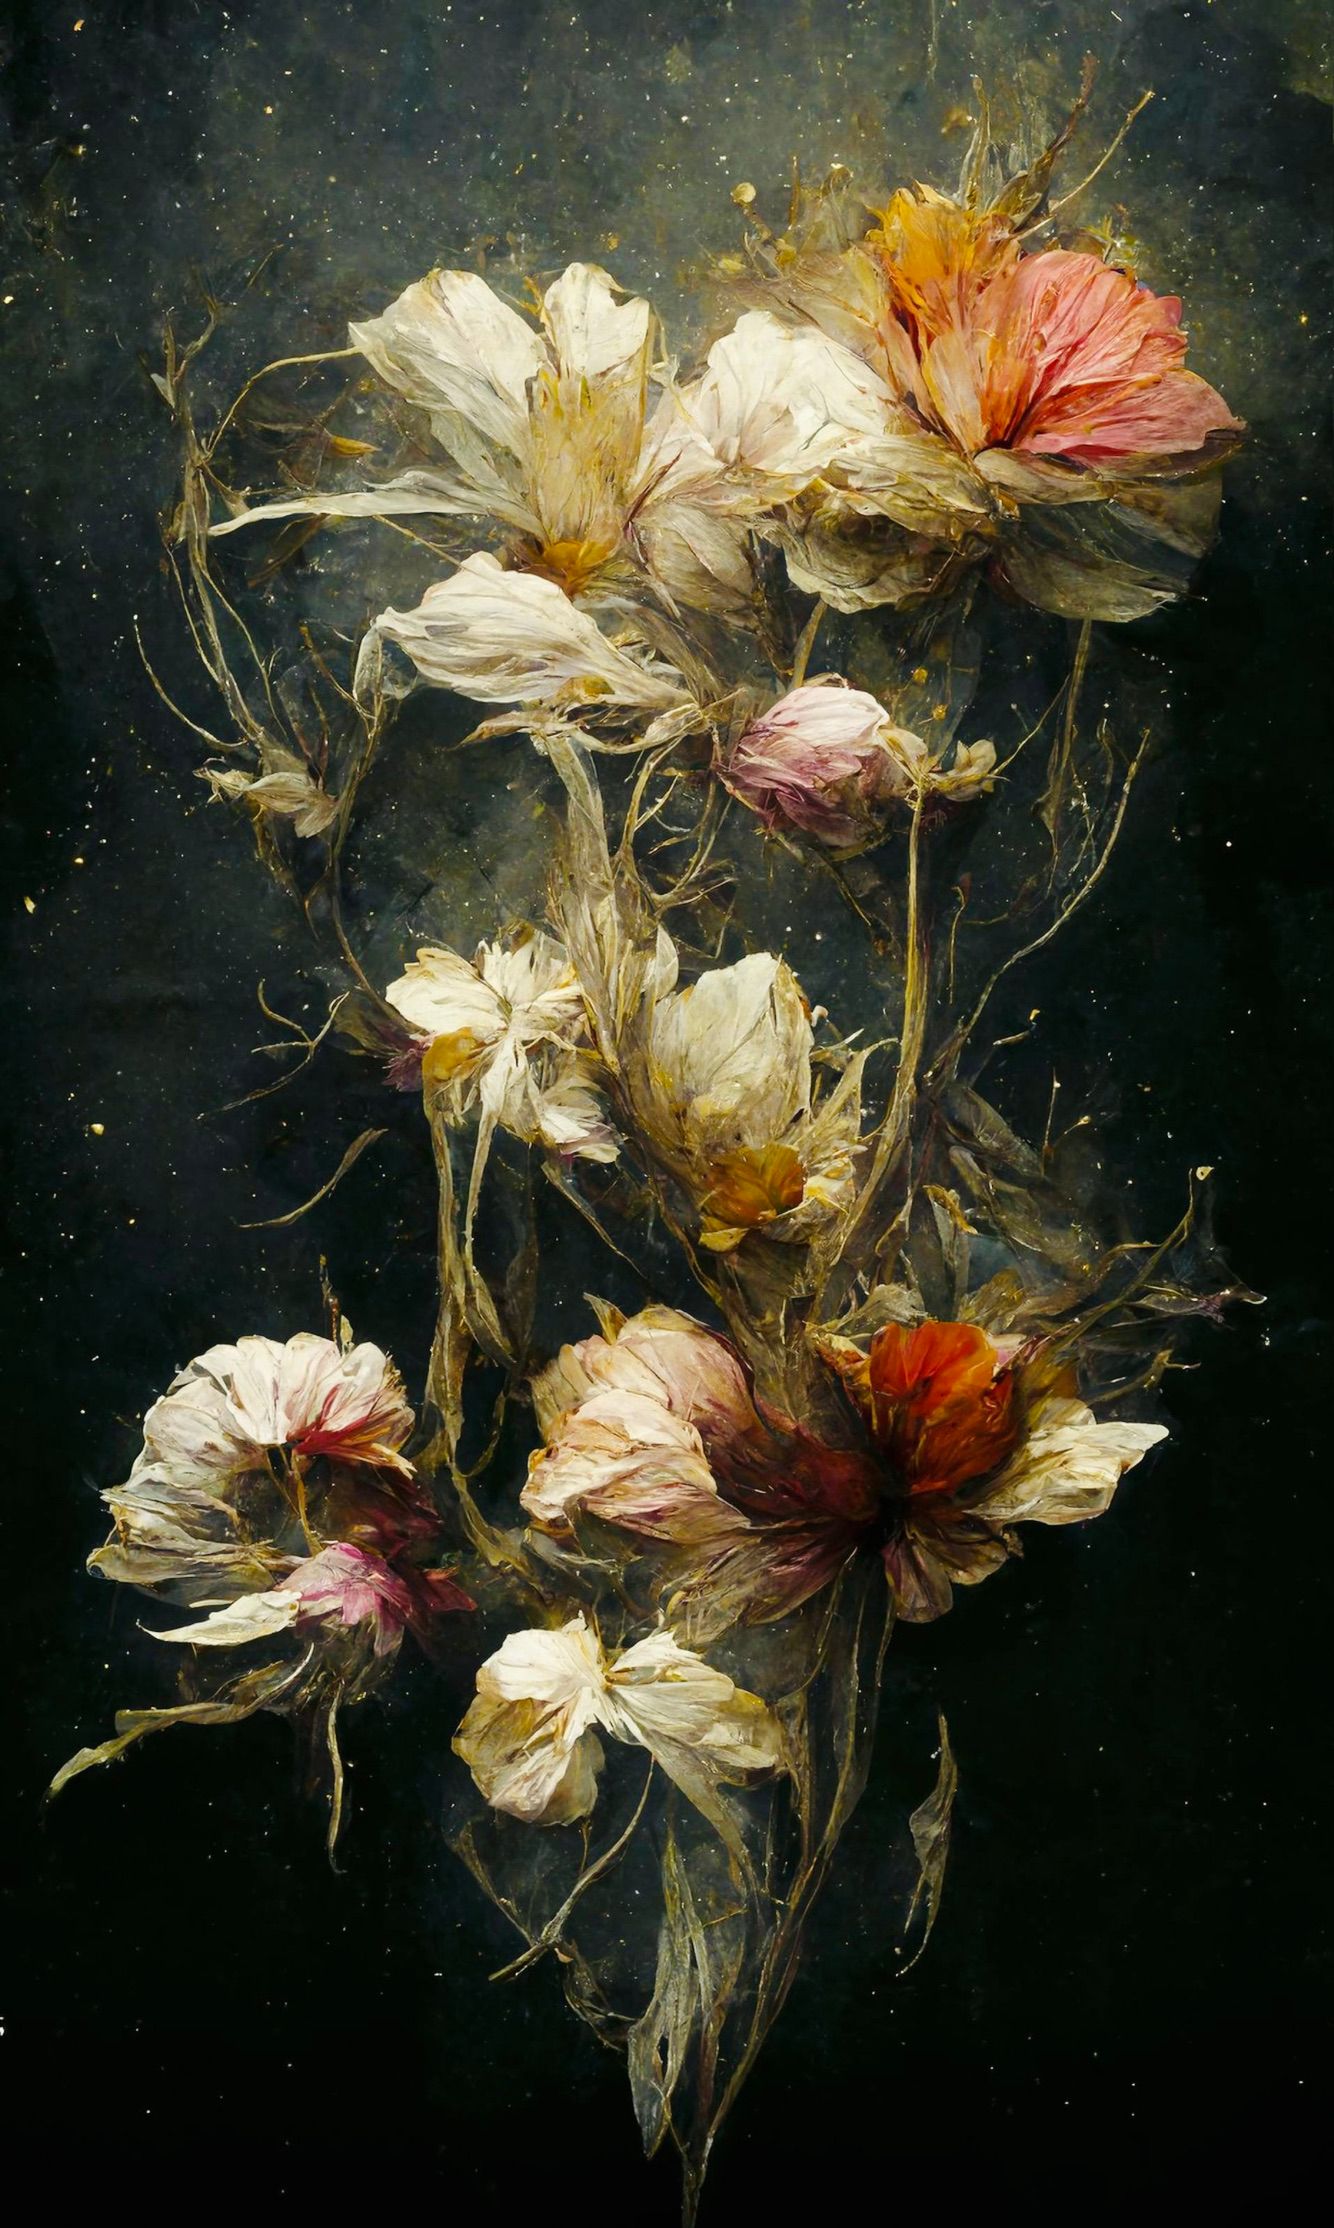 Pittura surrealista di Teis Albers: fiori delicati su sfondo scuro